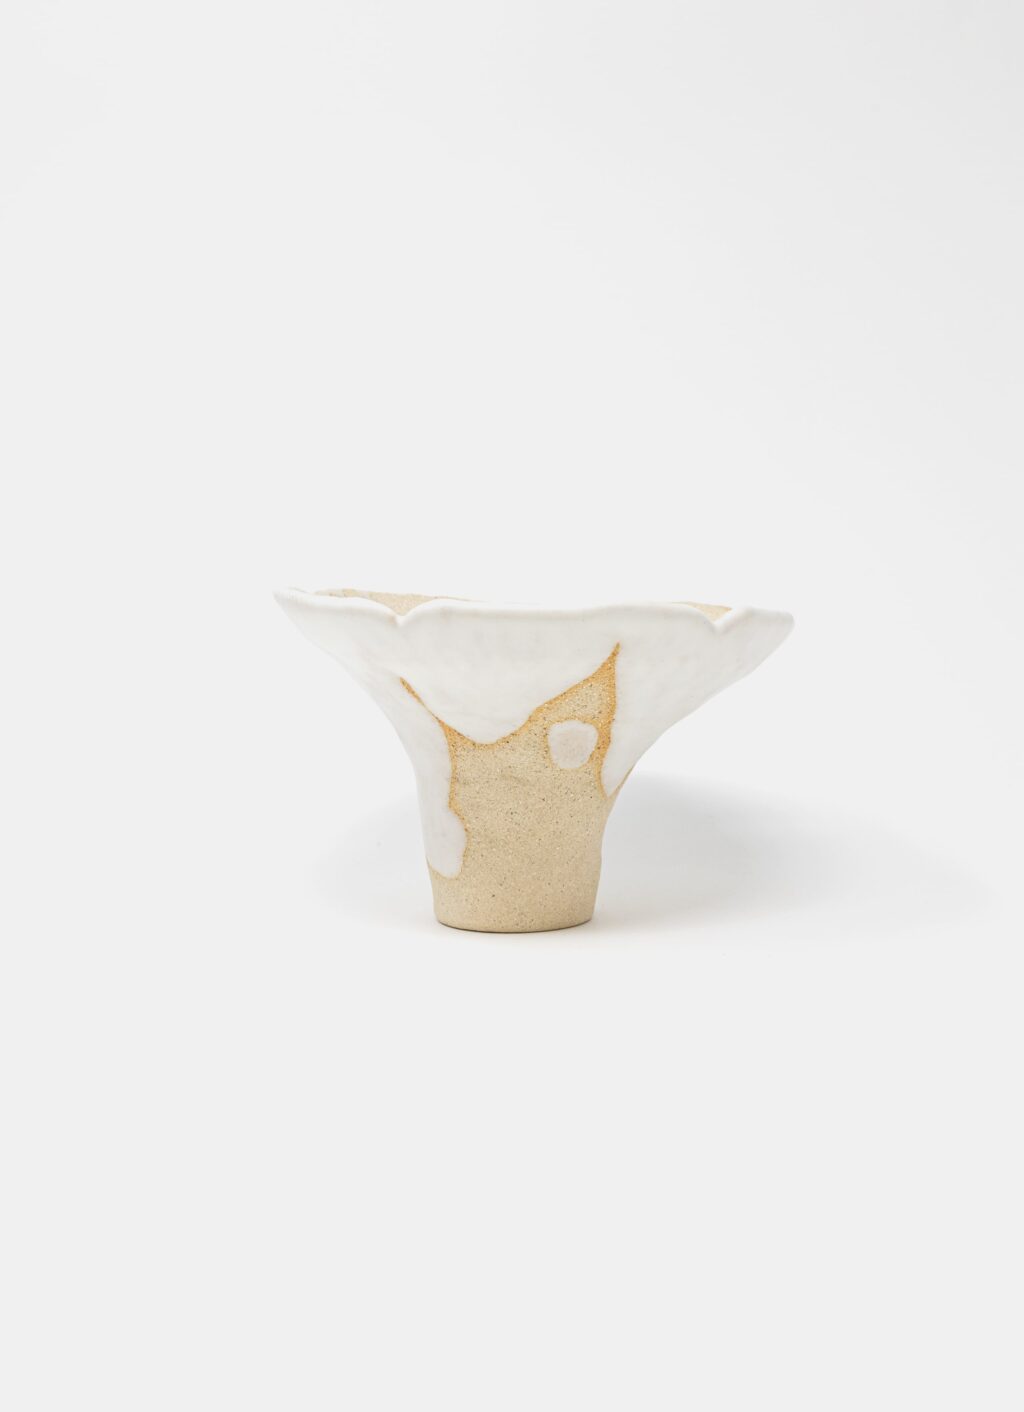 Mano Mani - Ikebana Vase - Light Stoneware and white glaze - 1